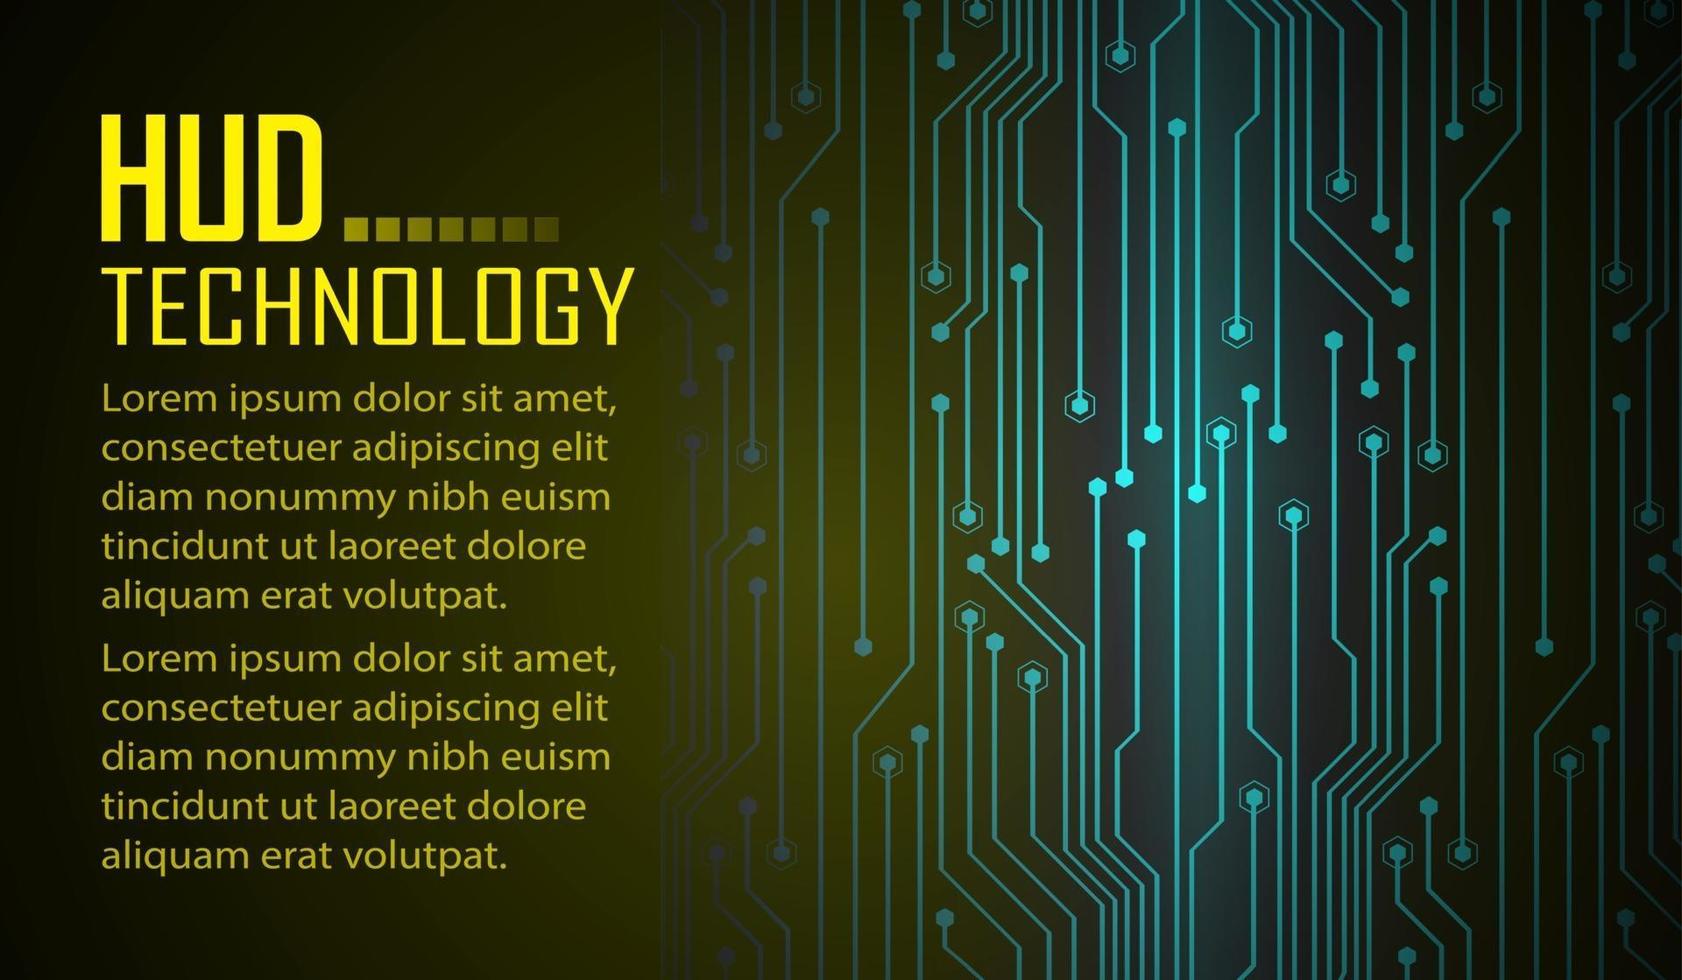 tekst cyber circuit toekomstige technologie concept achtergrond vector